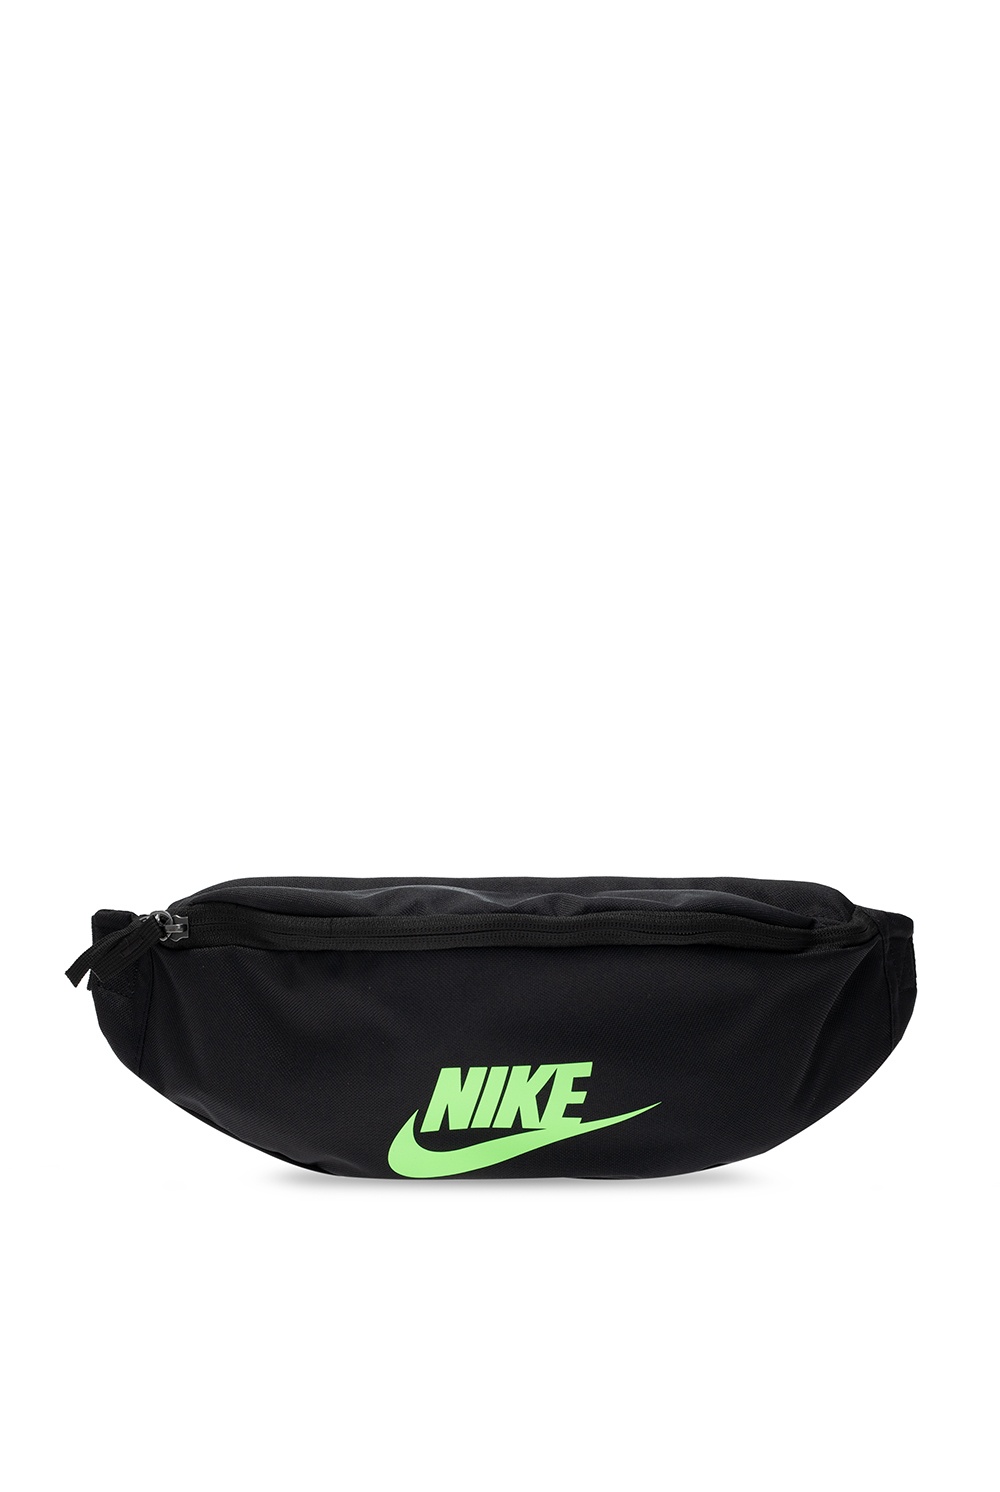 Air Max 91 | Nike Branded belt bag | Men's Bags | IetpShops